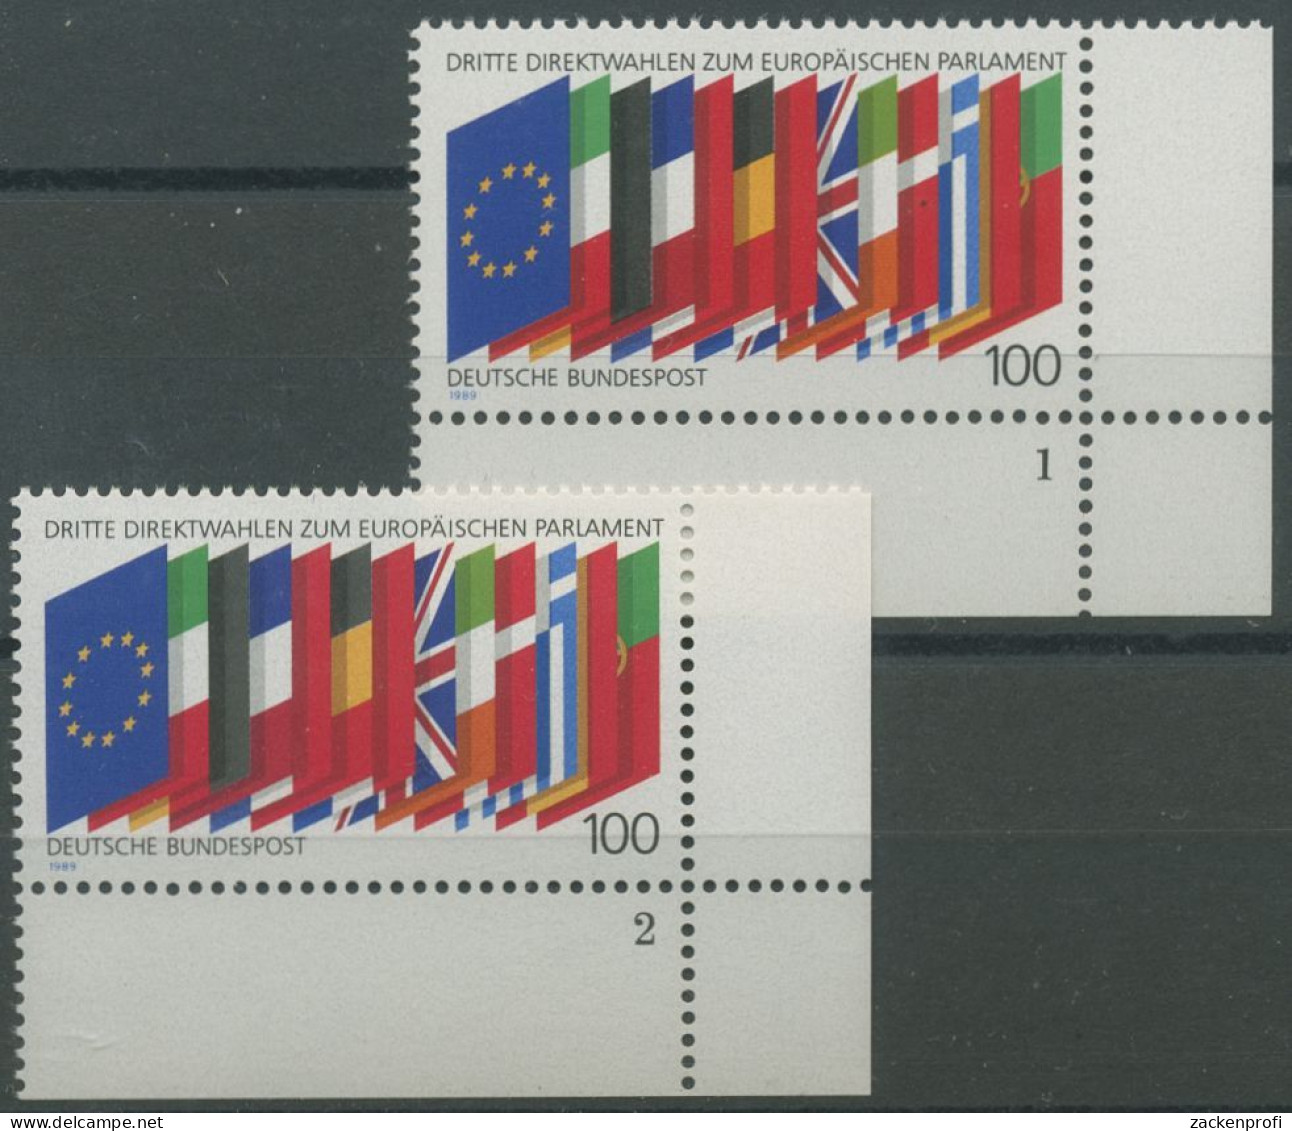 Bund 1989 Direktwahlen Zum Europ. Parlament 1416 Ecke 4 FN 1,2 Postfrisch (E657) - Ongebruikt